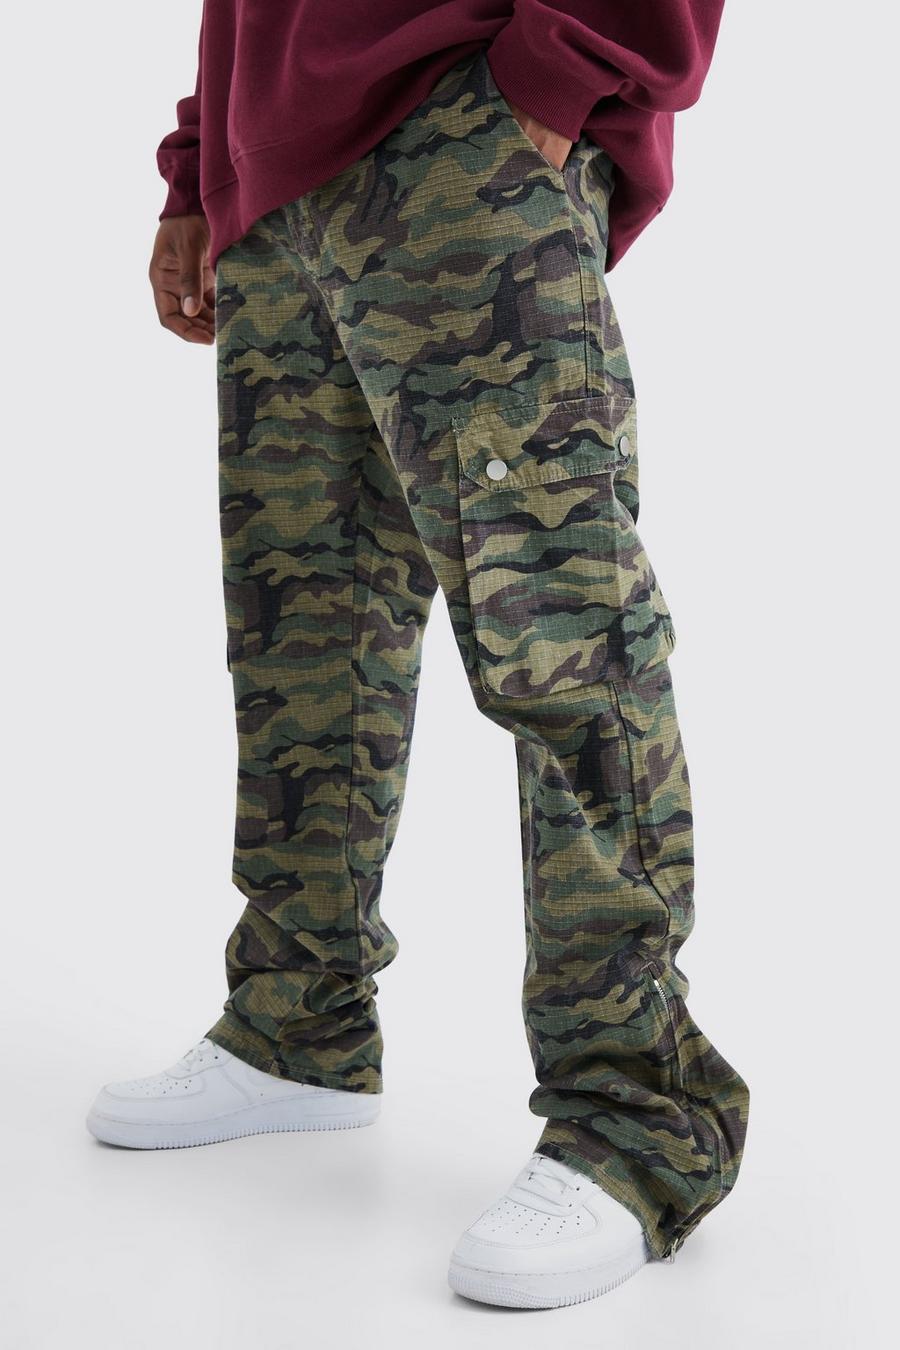 Pantaloni Plus Size Slim Fit in nylon ripstop in fantasia militare con inserti stile Cargo e pieghe sul fondo, Khaki